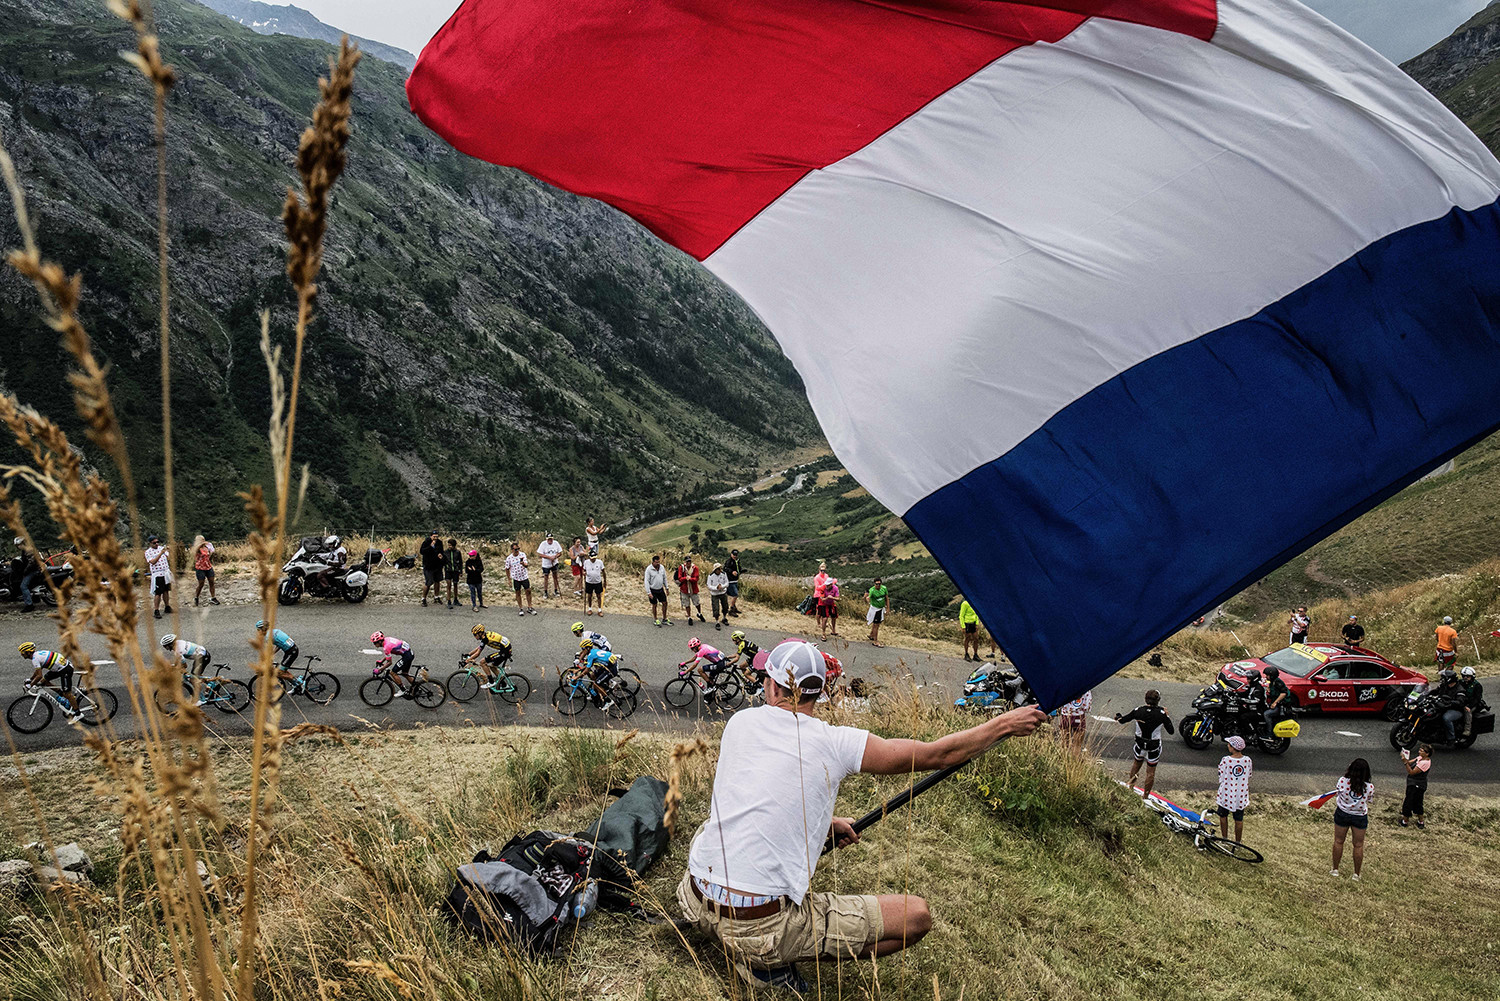   Một người hâm mộ vẫy cờ quốc gia Pháp khi gói cưỡi lên dốc trong chặng 19 của cuộc đua xe đạp Tour de France giữa Saint-Jean-de-Maurienne và Tignes vào ngày 26/7.  